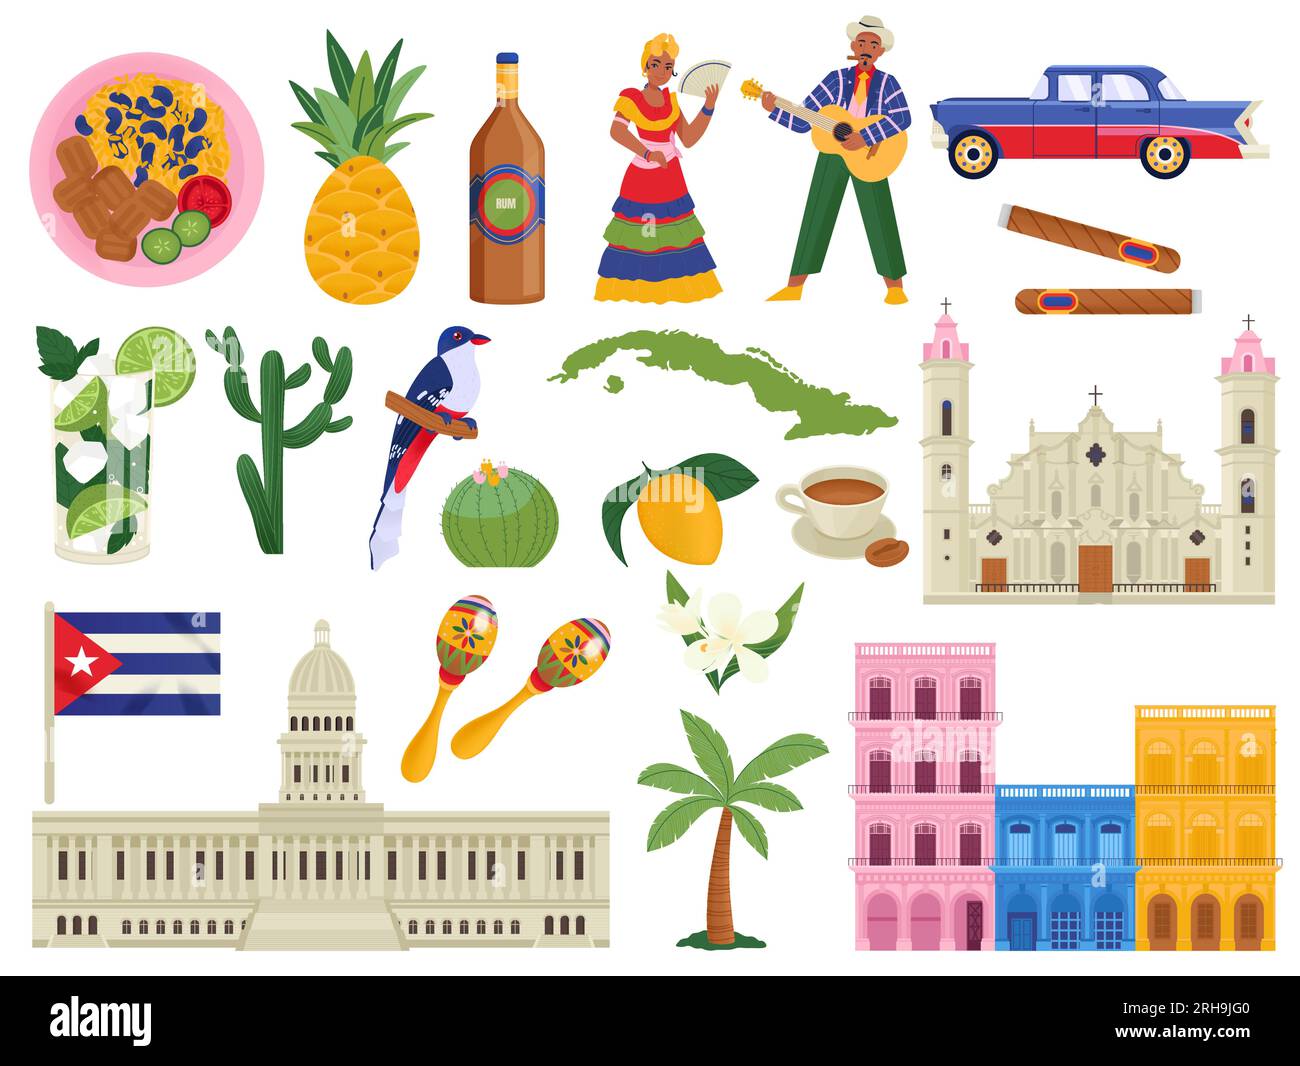 Cuba iconos planos conjunto de símbolos cubanos platos nacionales monumentos personas fauna y flora aislado ilustración vectorial Ilustración del Vector